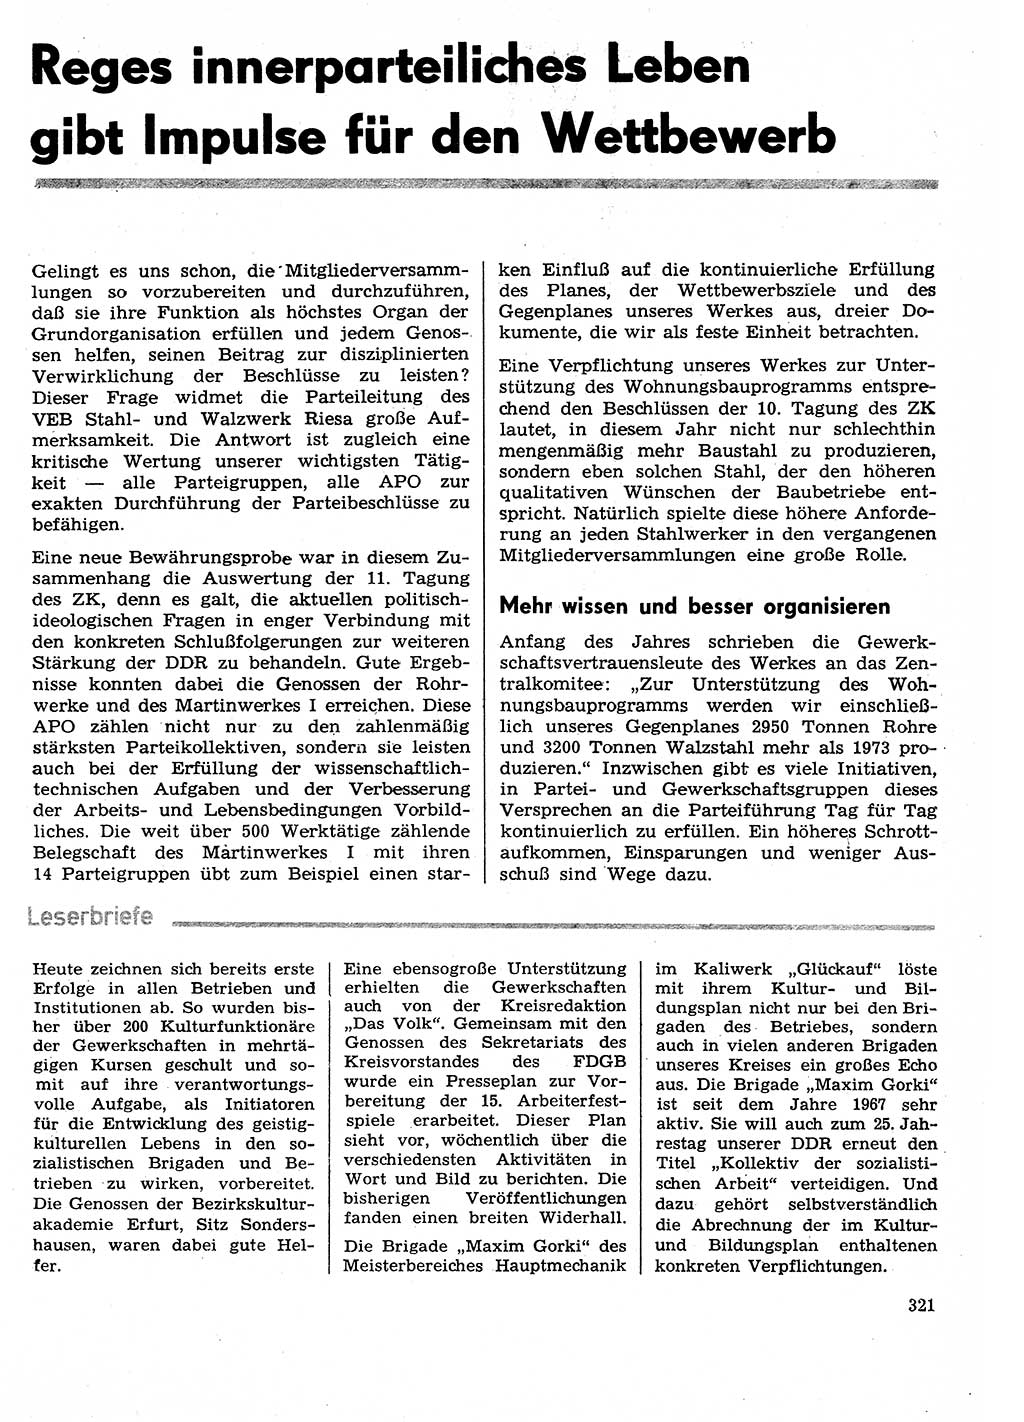 Neuer Weg (NW), Organ des Zentralkomitees (ZK) der SED (Sozialistische Einheitspartei Deutschlands) für Fragen des Parteilebens, 29. Jahrgang [Deutsche Demokratische Republik (DDR)] 1974, Seite 321 (NW ZK SED DDR 1974, S. 321)